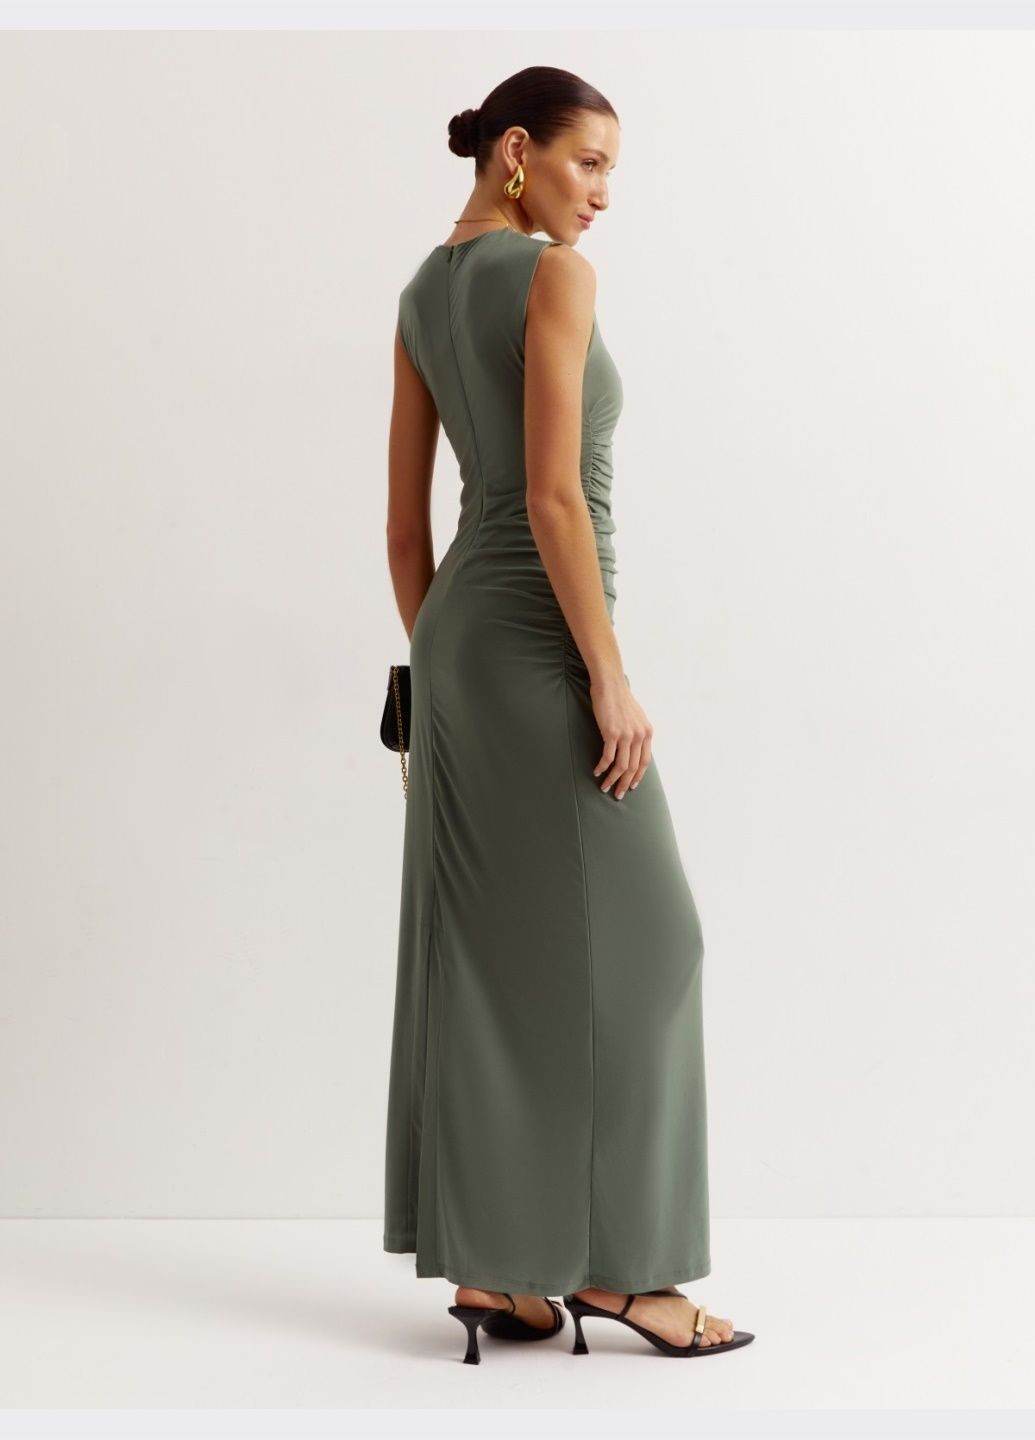 Оливковое (хаки) длинное платье цвета хаки без рукавов Dressa